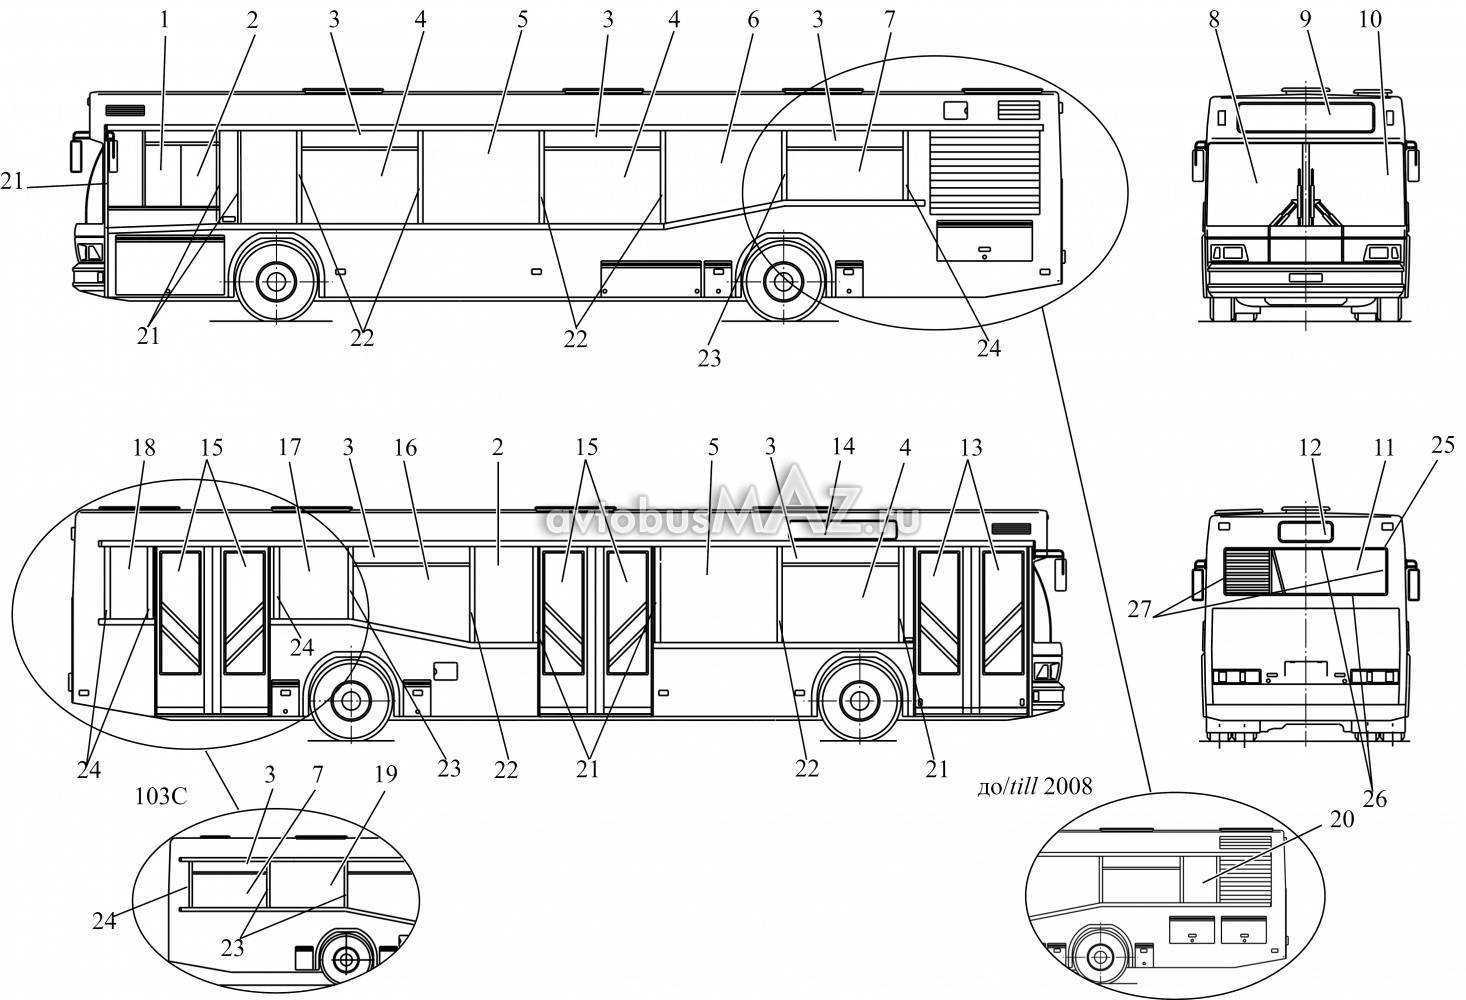 Автобус маз-203: характеристики, фото, низкопольный, городской